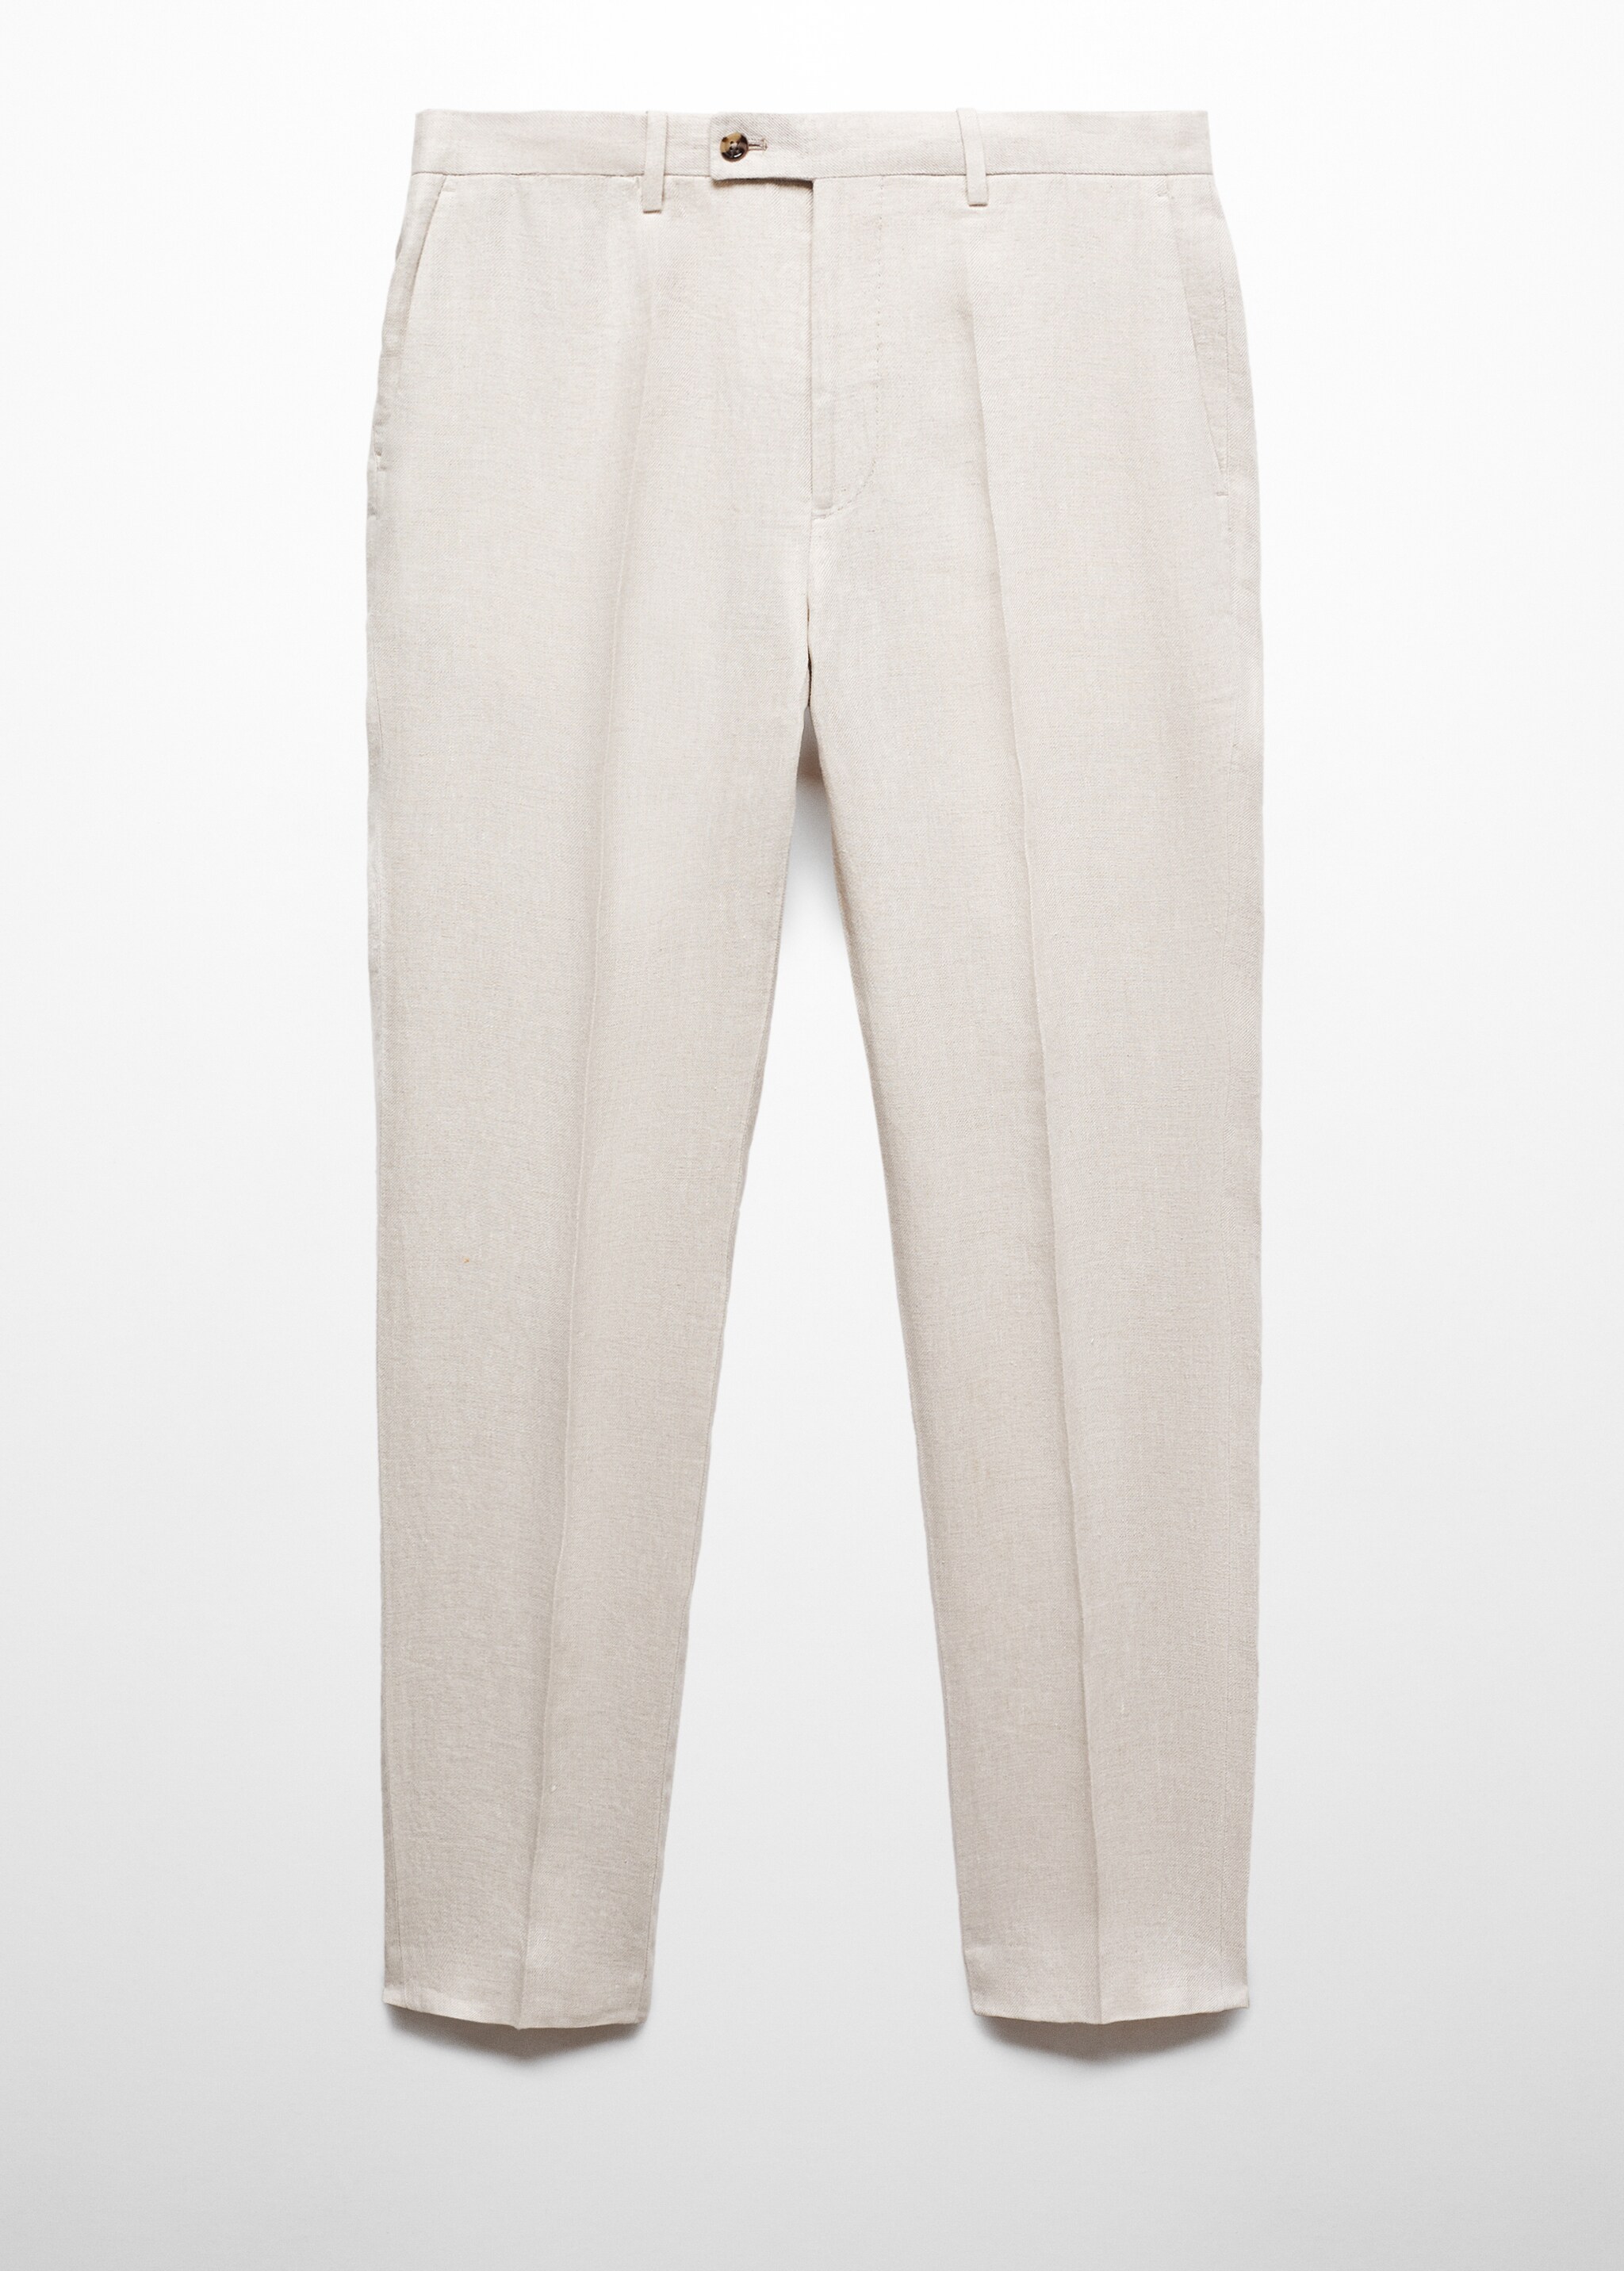 Spodnie garniturowe slim fit z 100% lnu - Artykuł bez modela/modelki